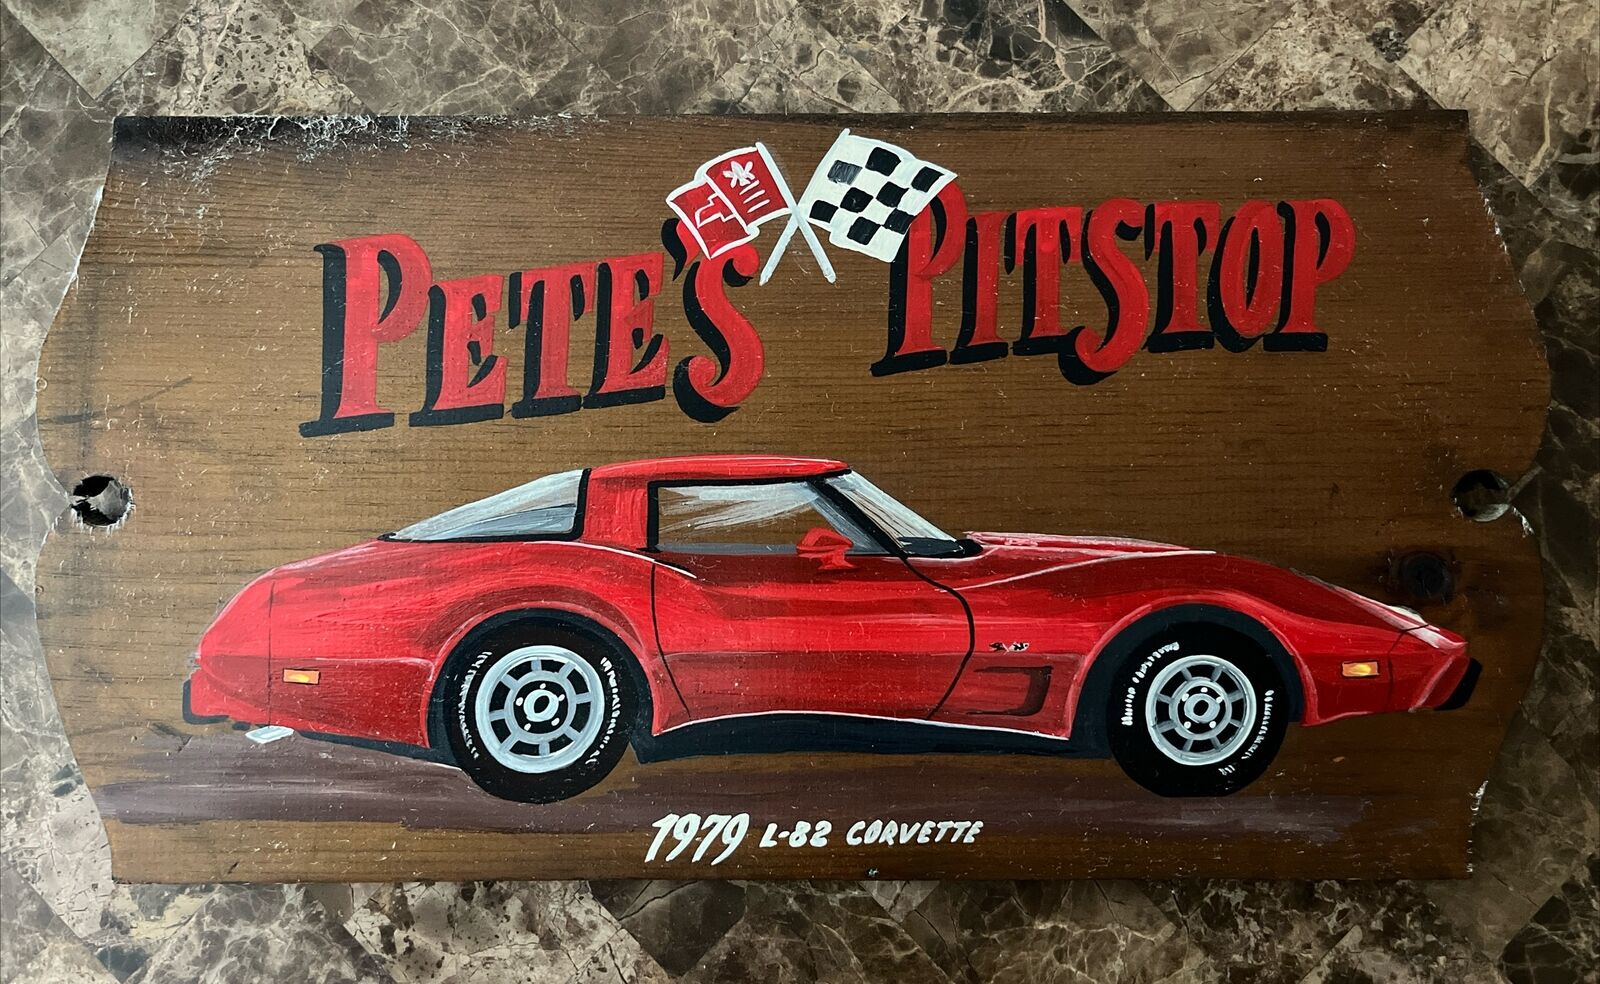 1979 Chevrolet Corvette L-82 Hand Painted Wooden Sign “Pete’s Pit stop”